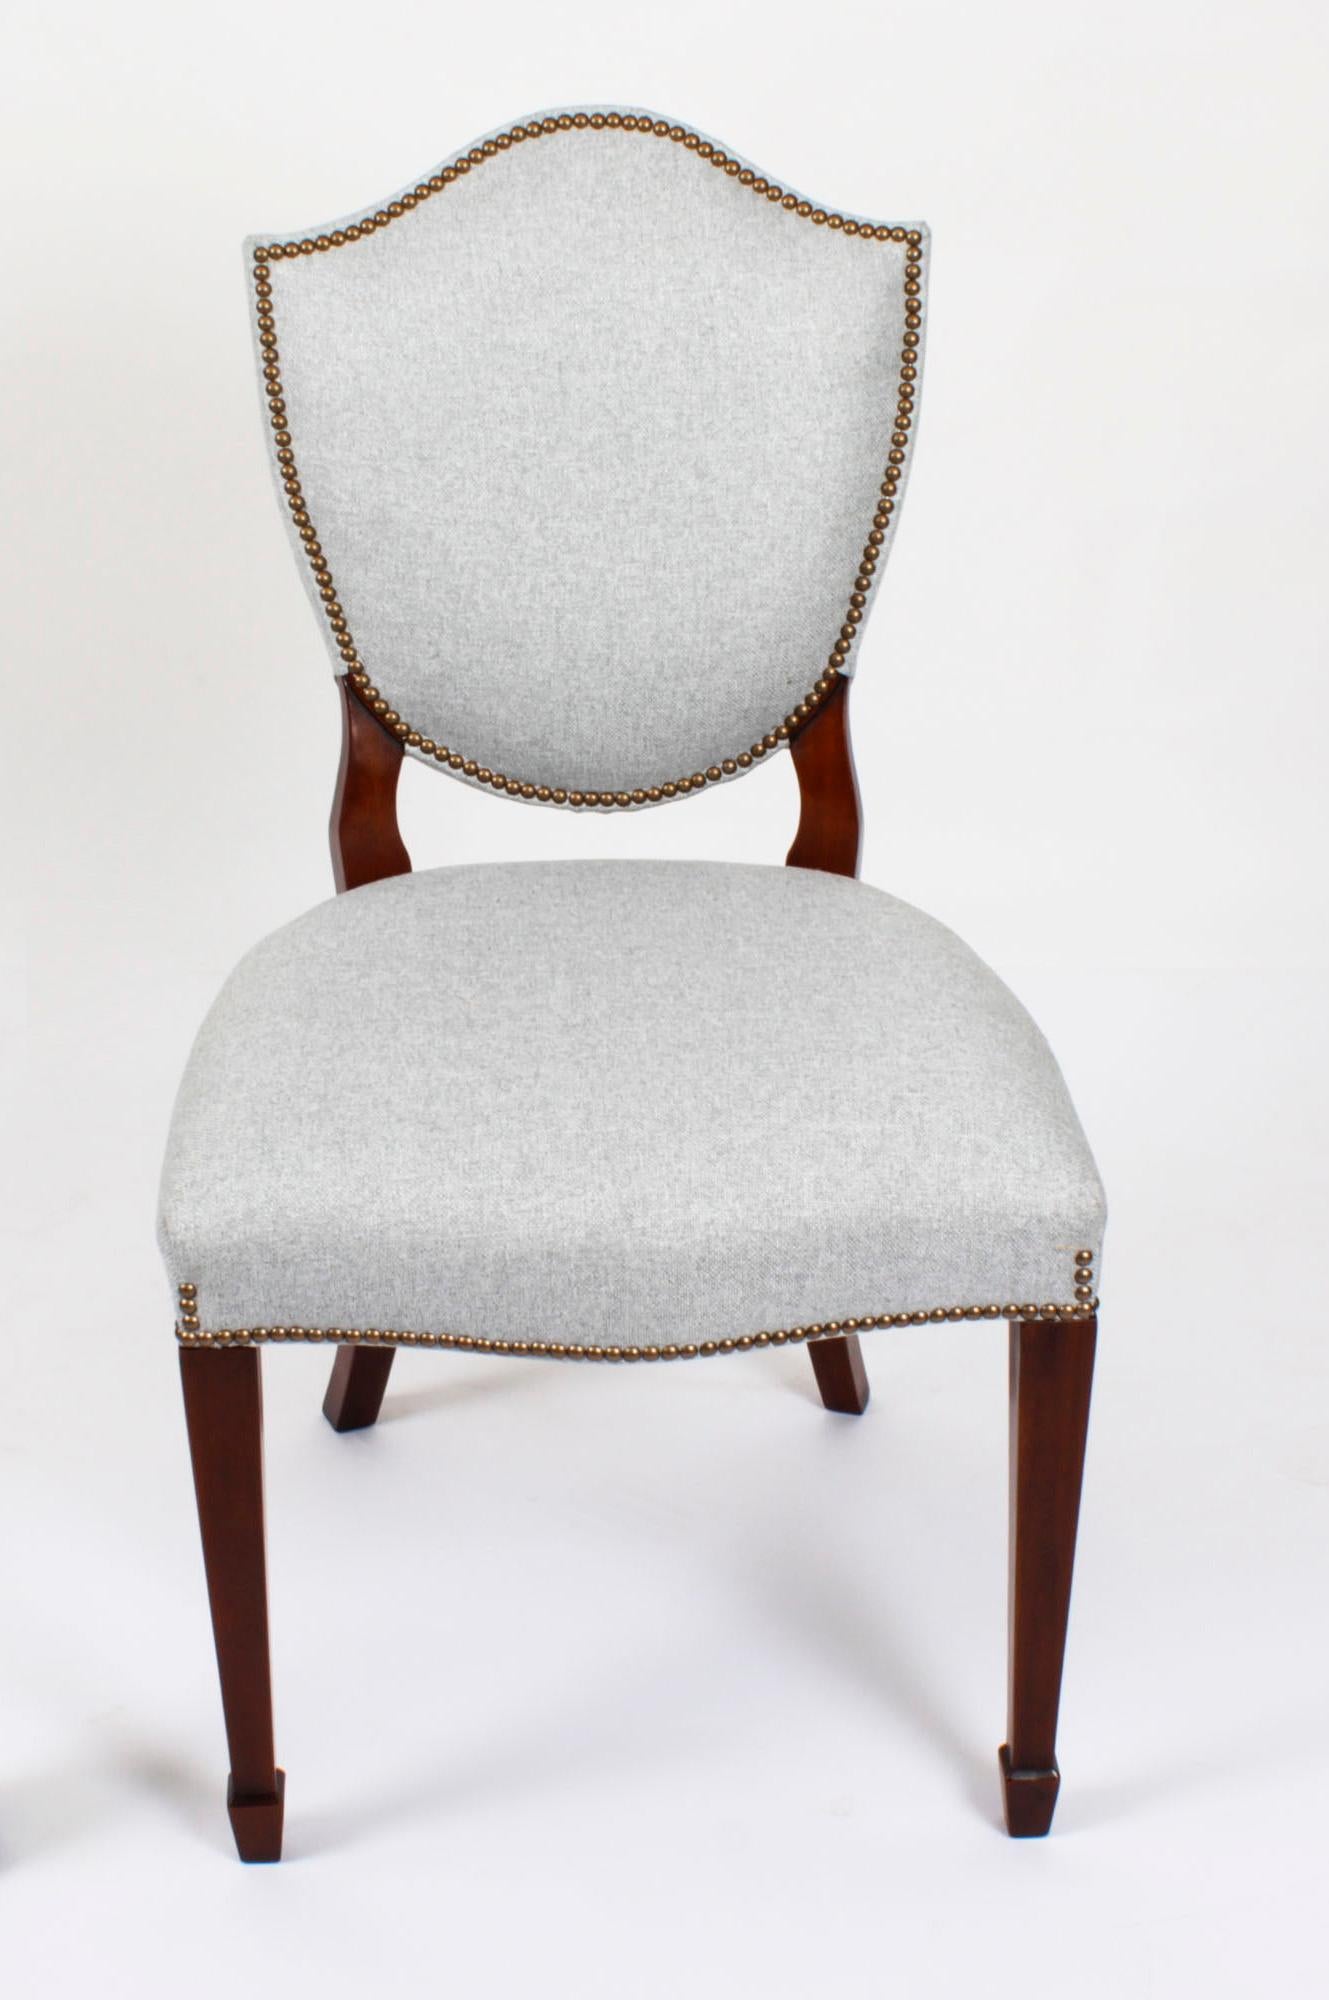 Superbe ensemble Vintage de douze chaises de salle à manger à dossier bouclier, datant de la seconde moitié du 20e siècle, avec dossiers tapissés.

Magnifiquement fabriqué à la main en acajou massif, cet ensemble comprend dix chaises d'appoint et